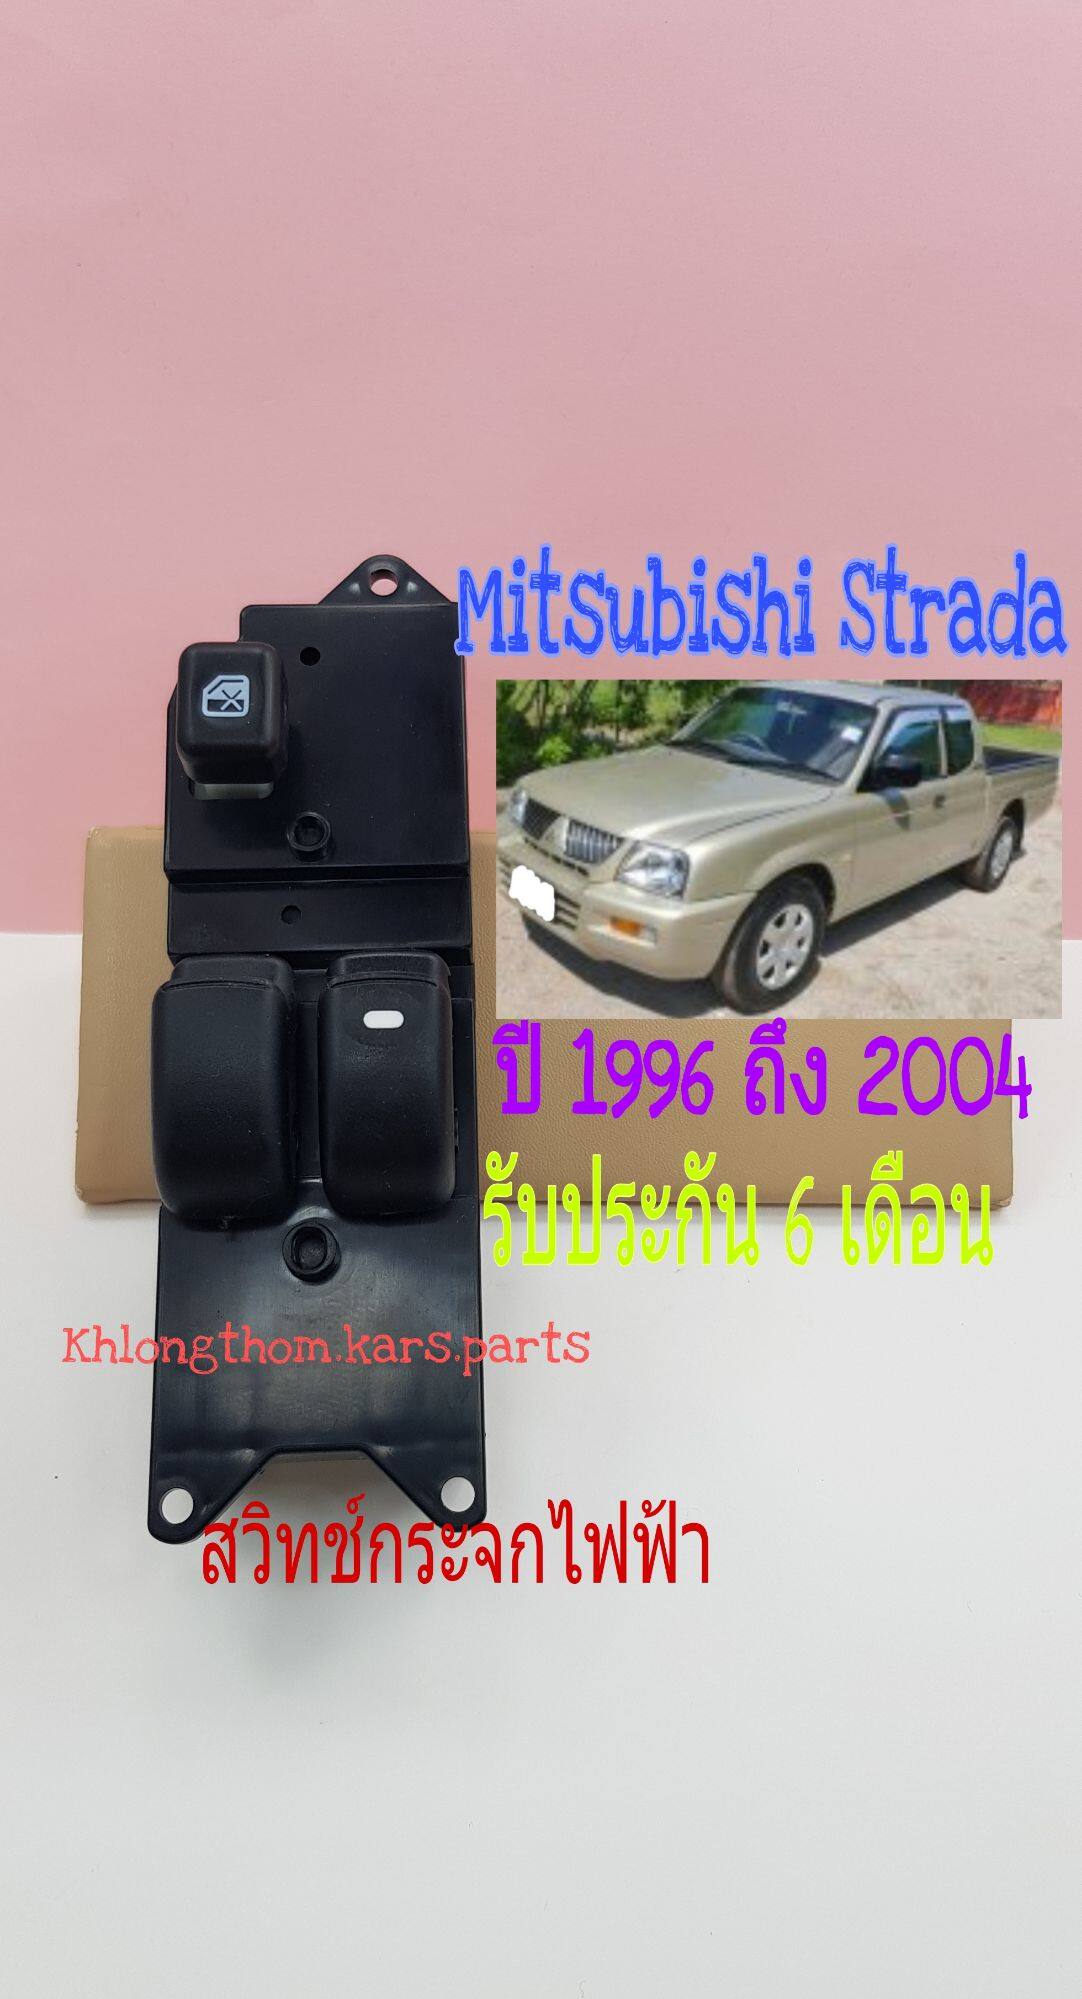 สวิทช์กระจกไฟฟ้า Mitsubishi starda รุ่น 2 ประตู ปี 1996 ถึง 2004